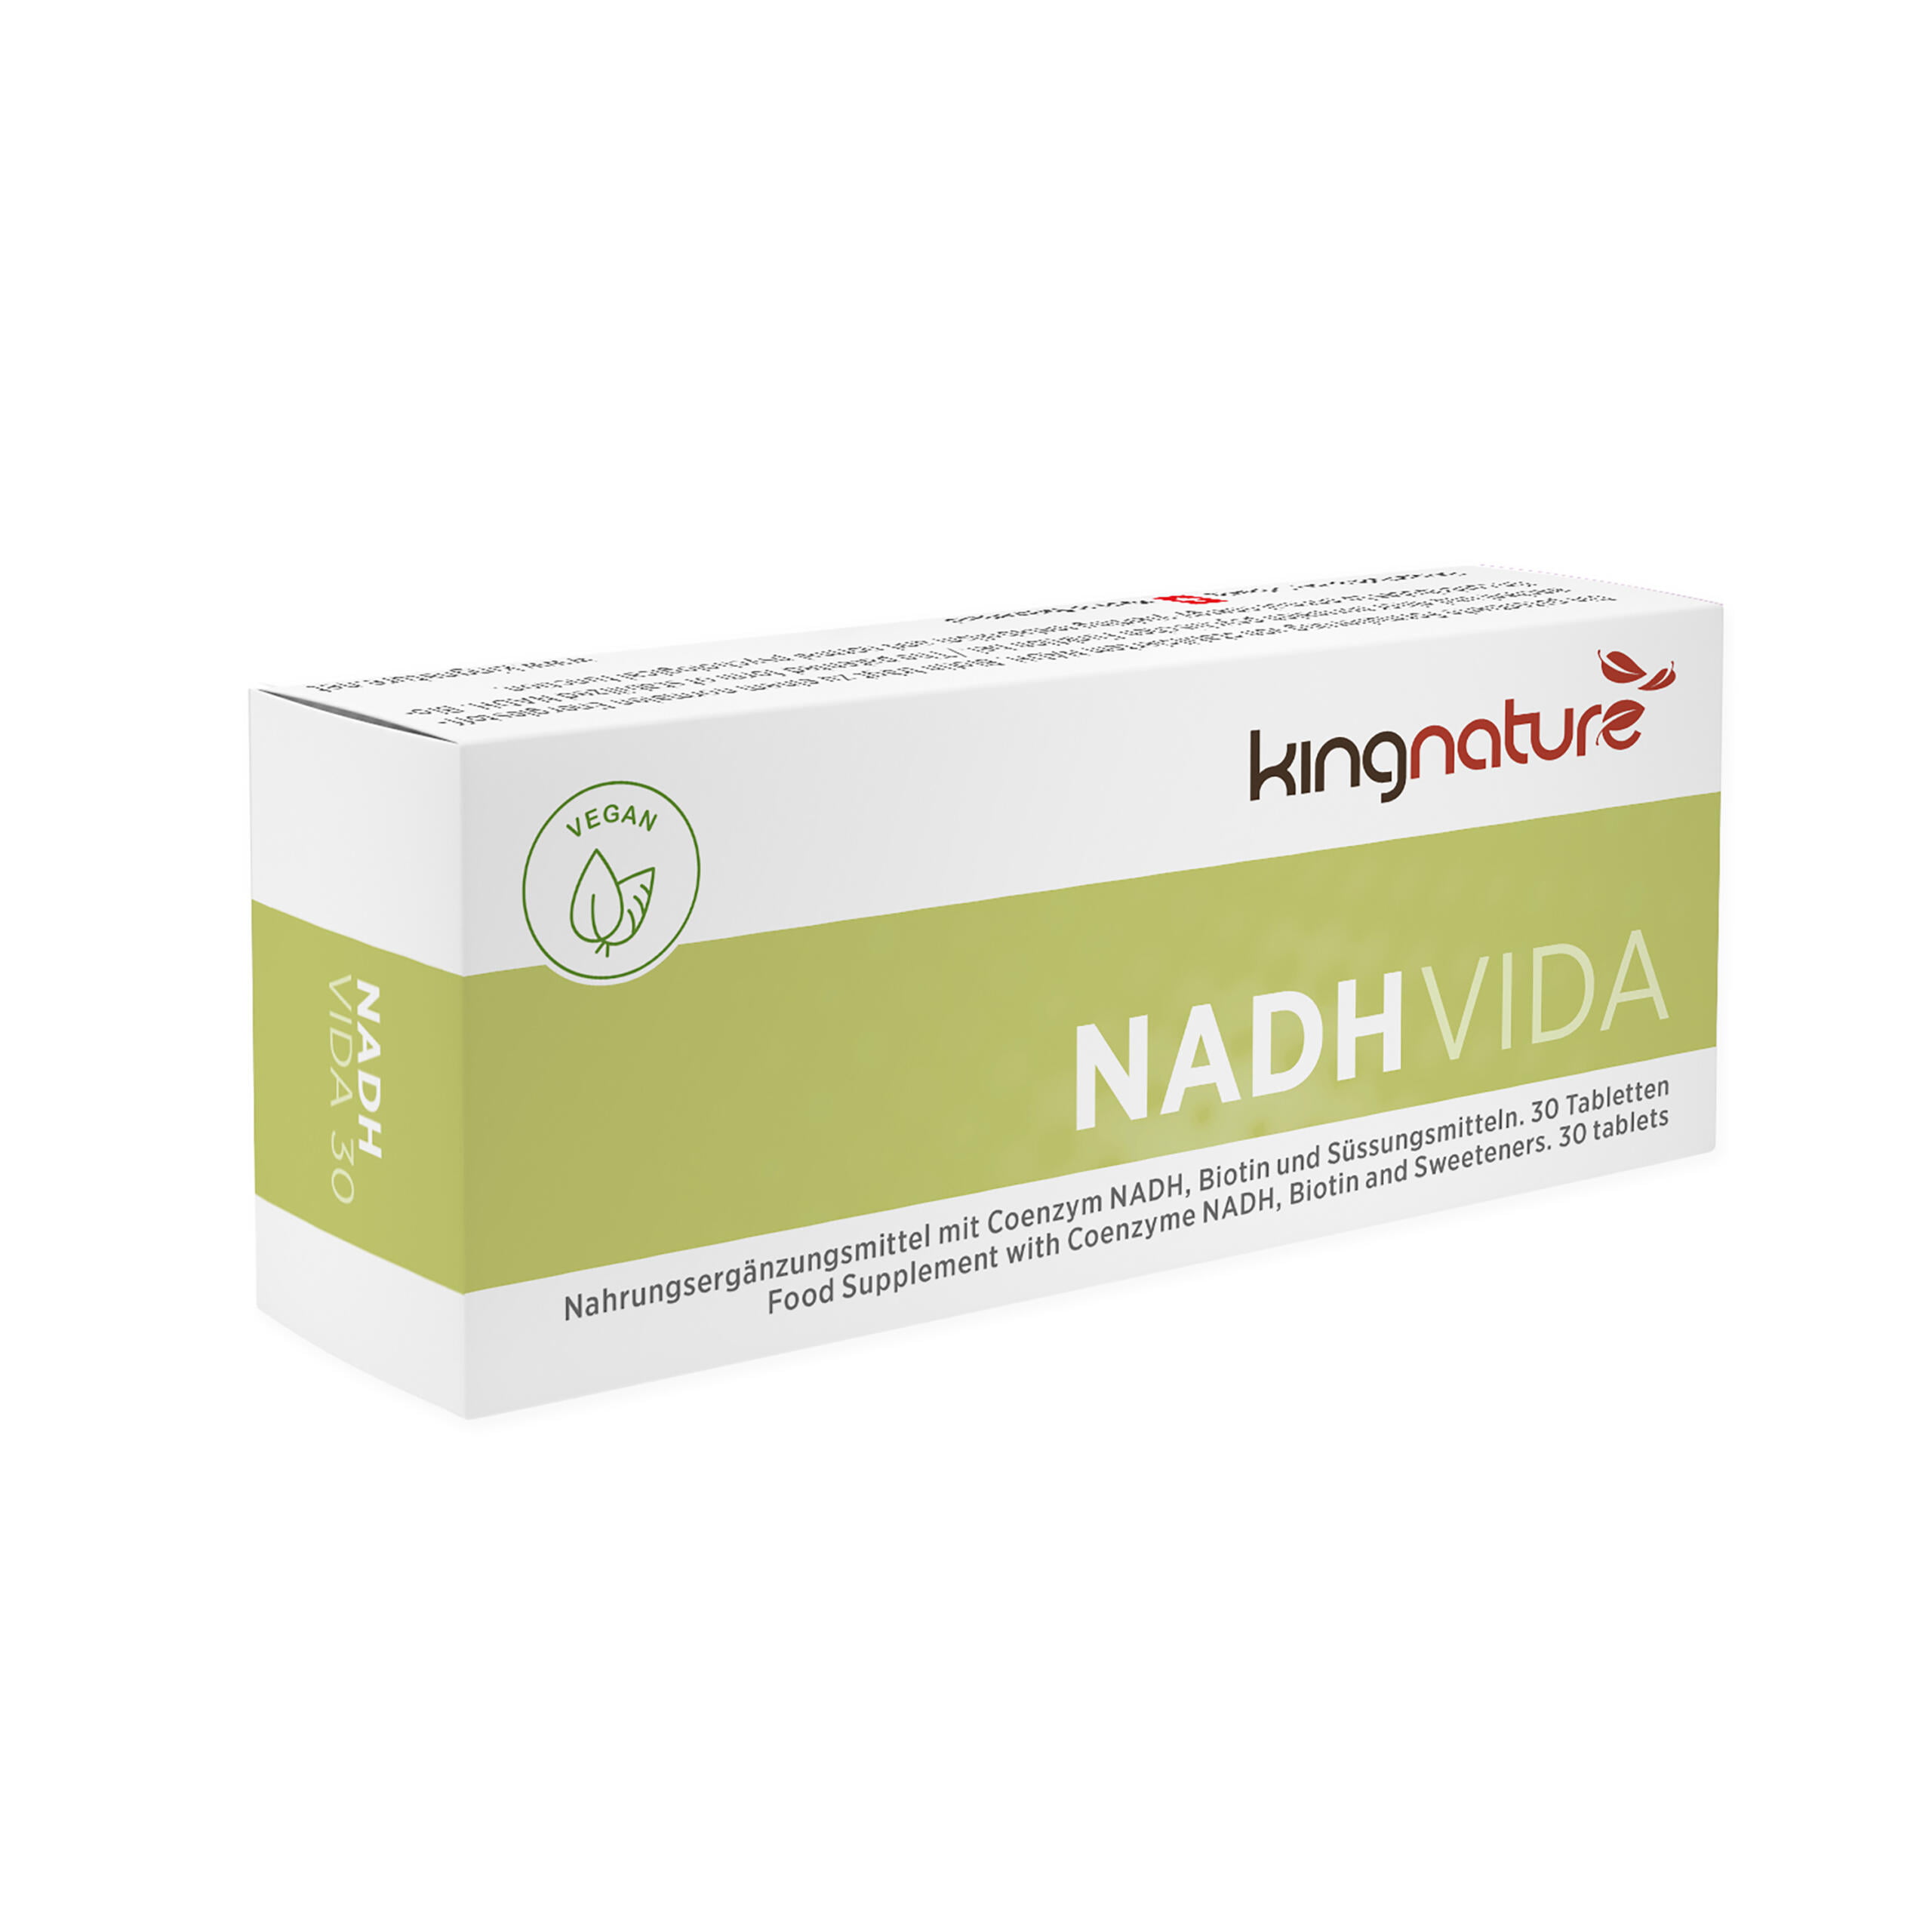 NADH Vida (30 Tabletten)